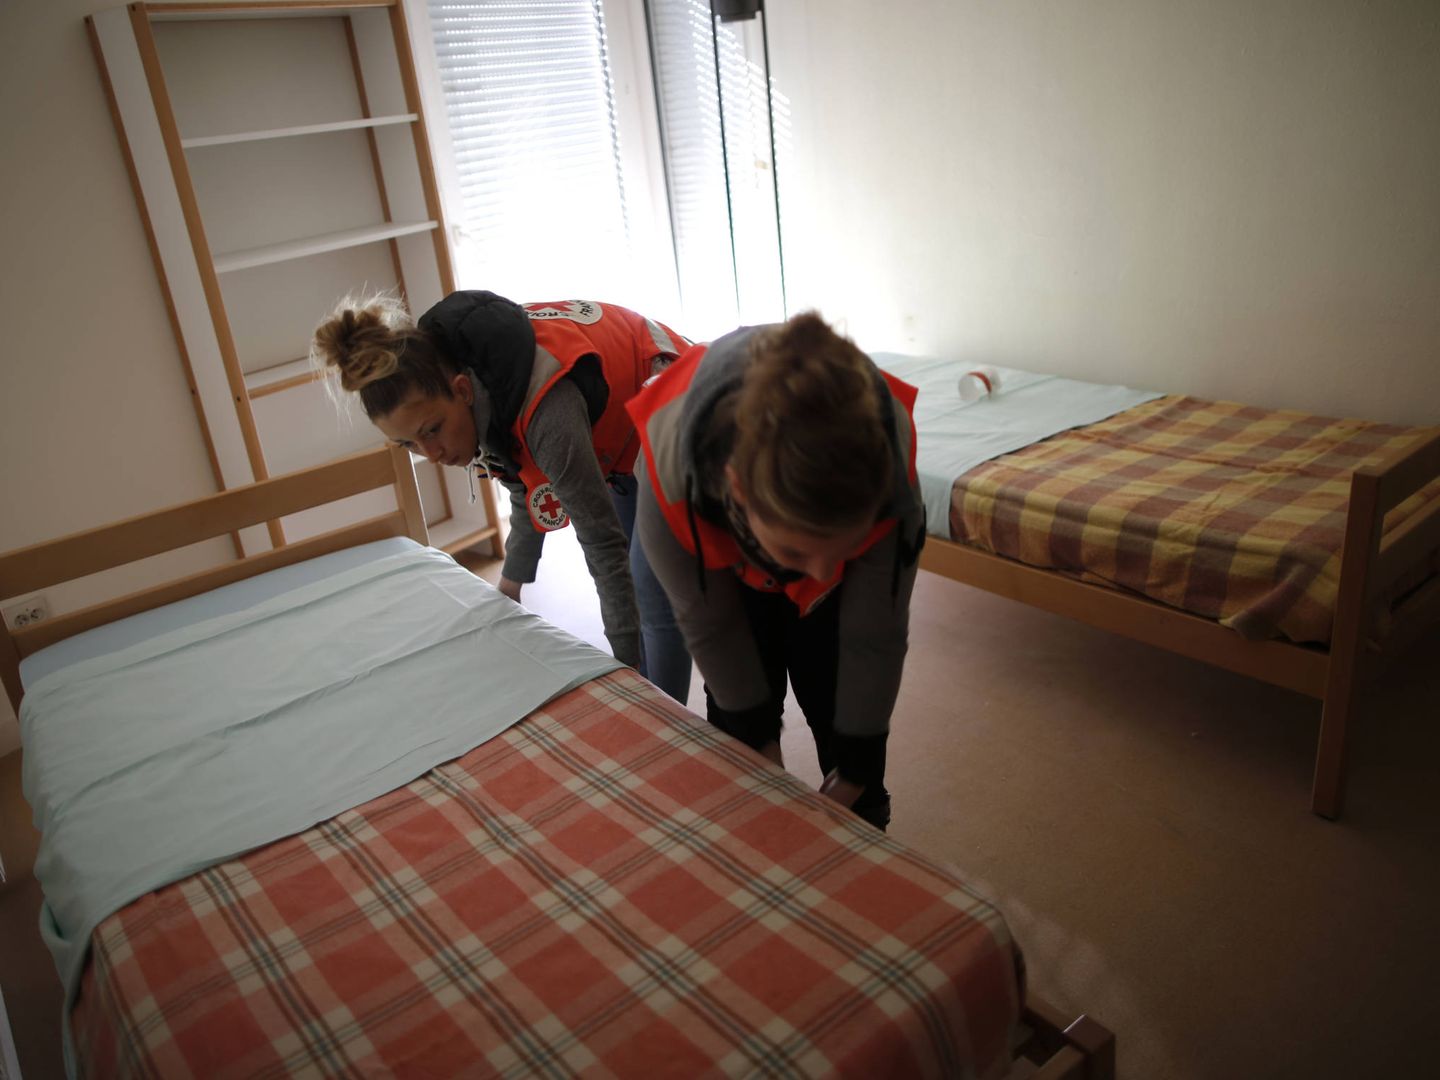 Miembros de la Cruz Roja francesa preparan un dormitorio para acoger a refugiados de Siria e Irak en Champagne-sur-Seine, cerca de París, en septiembre de 2015. (Reuters)